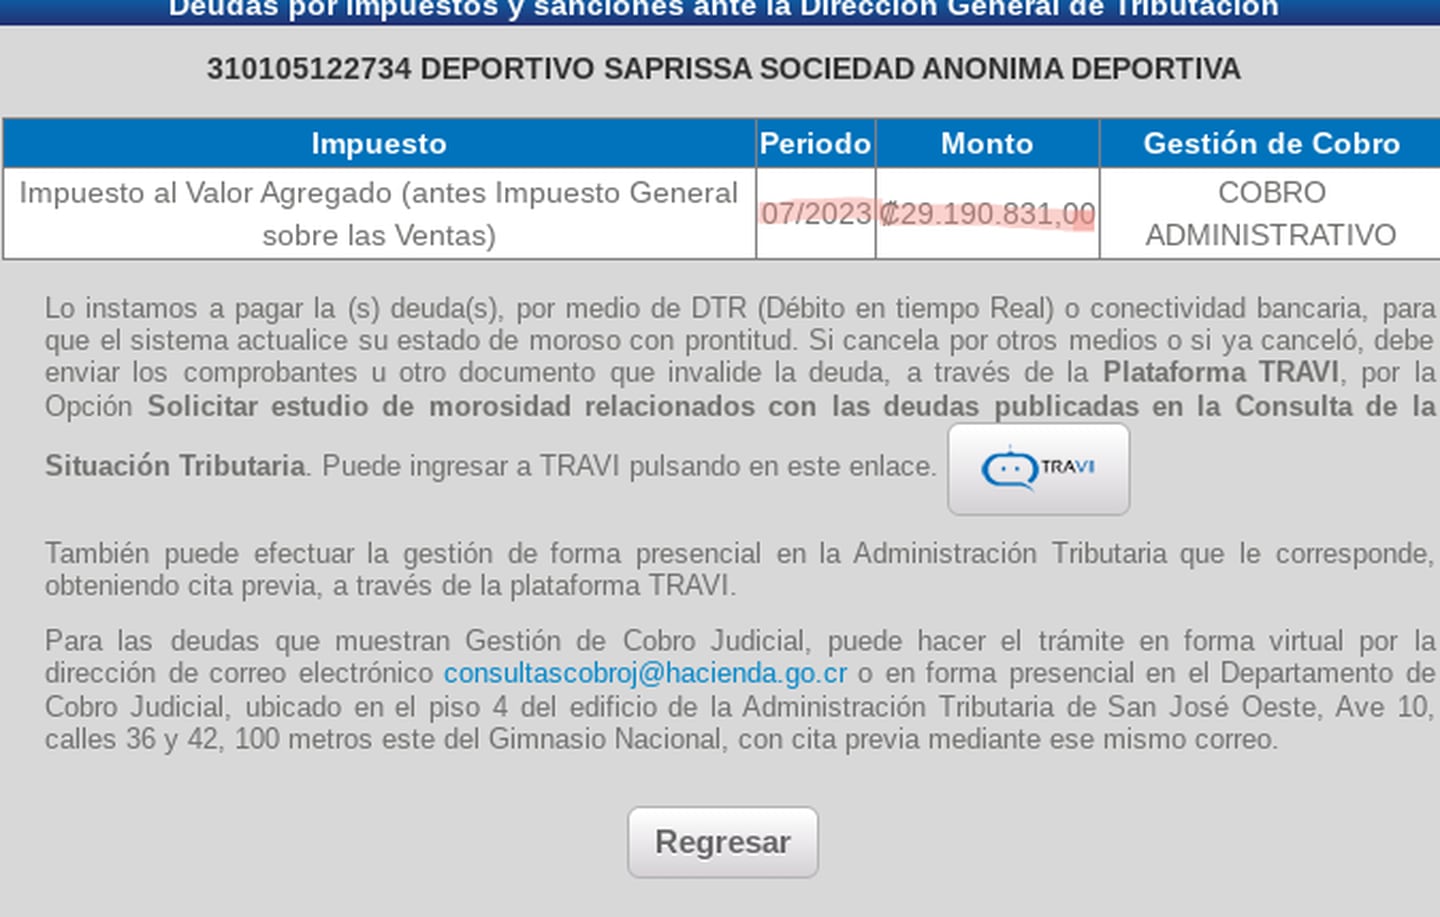 La imagen muestra que, para julio de 2023, el Deportivo Saprissa S. A., firma patrocinada por el INS, mantenía una deuda millonaria por el no pago de impuestos.